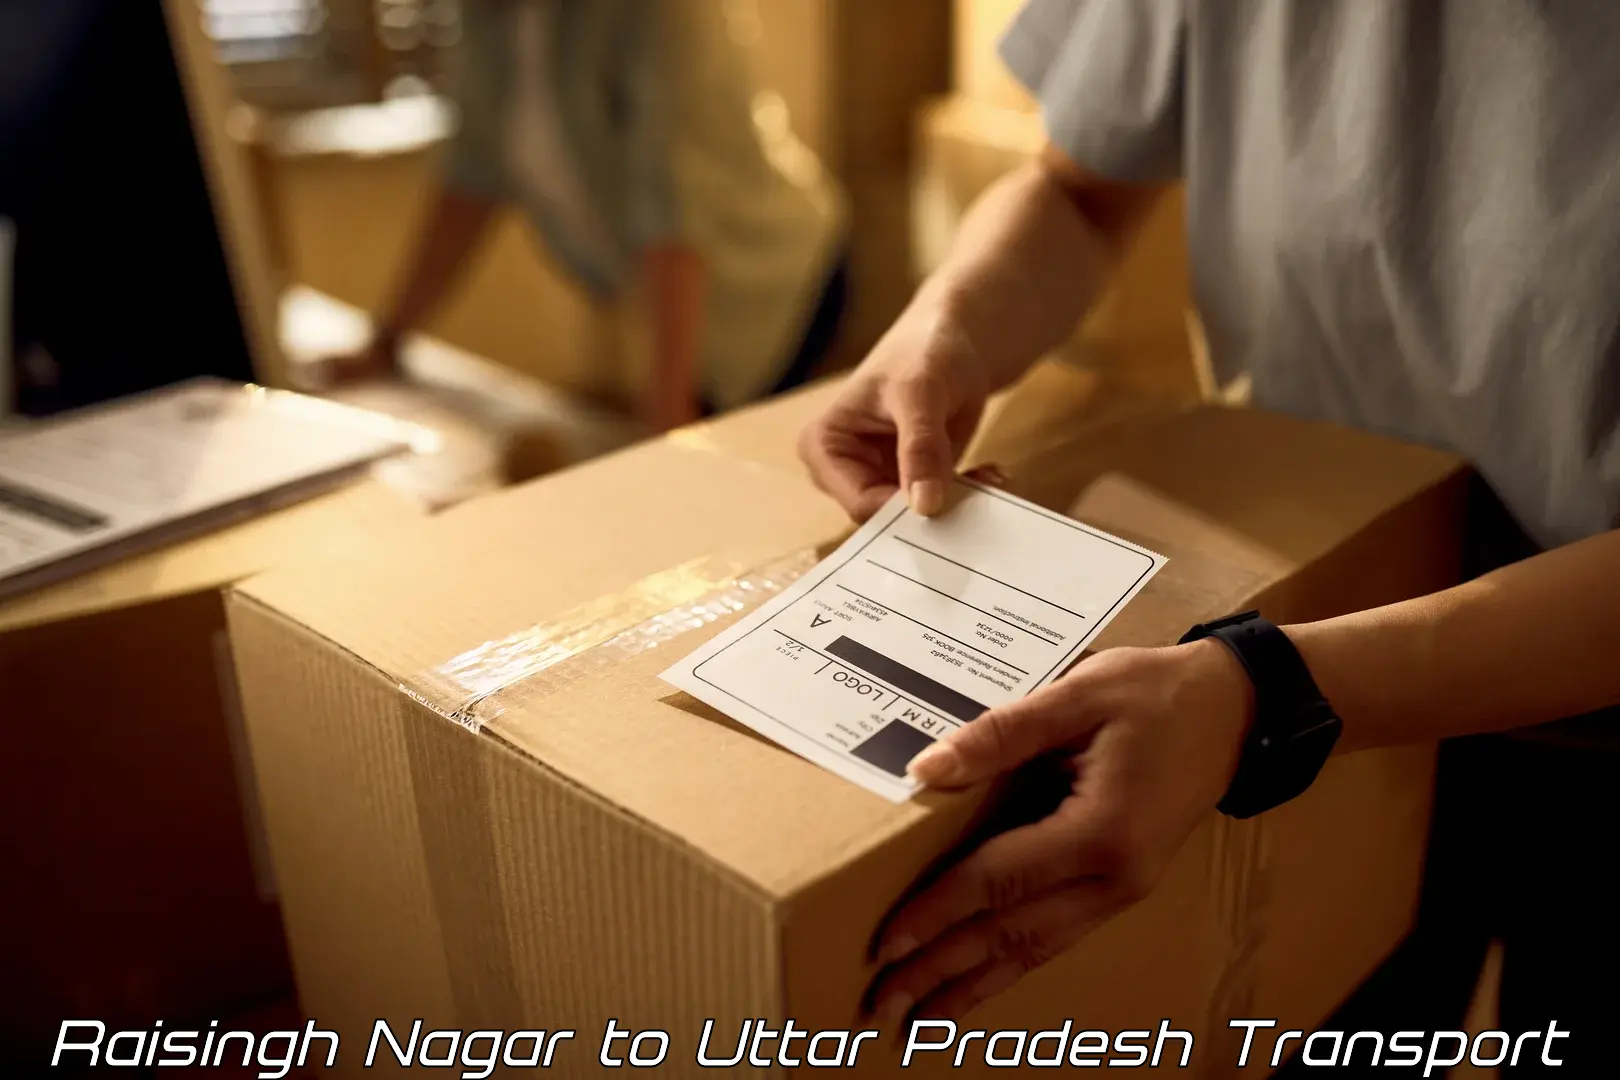 Cargo transport services Raisingh Nagar to Bareilly